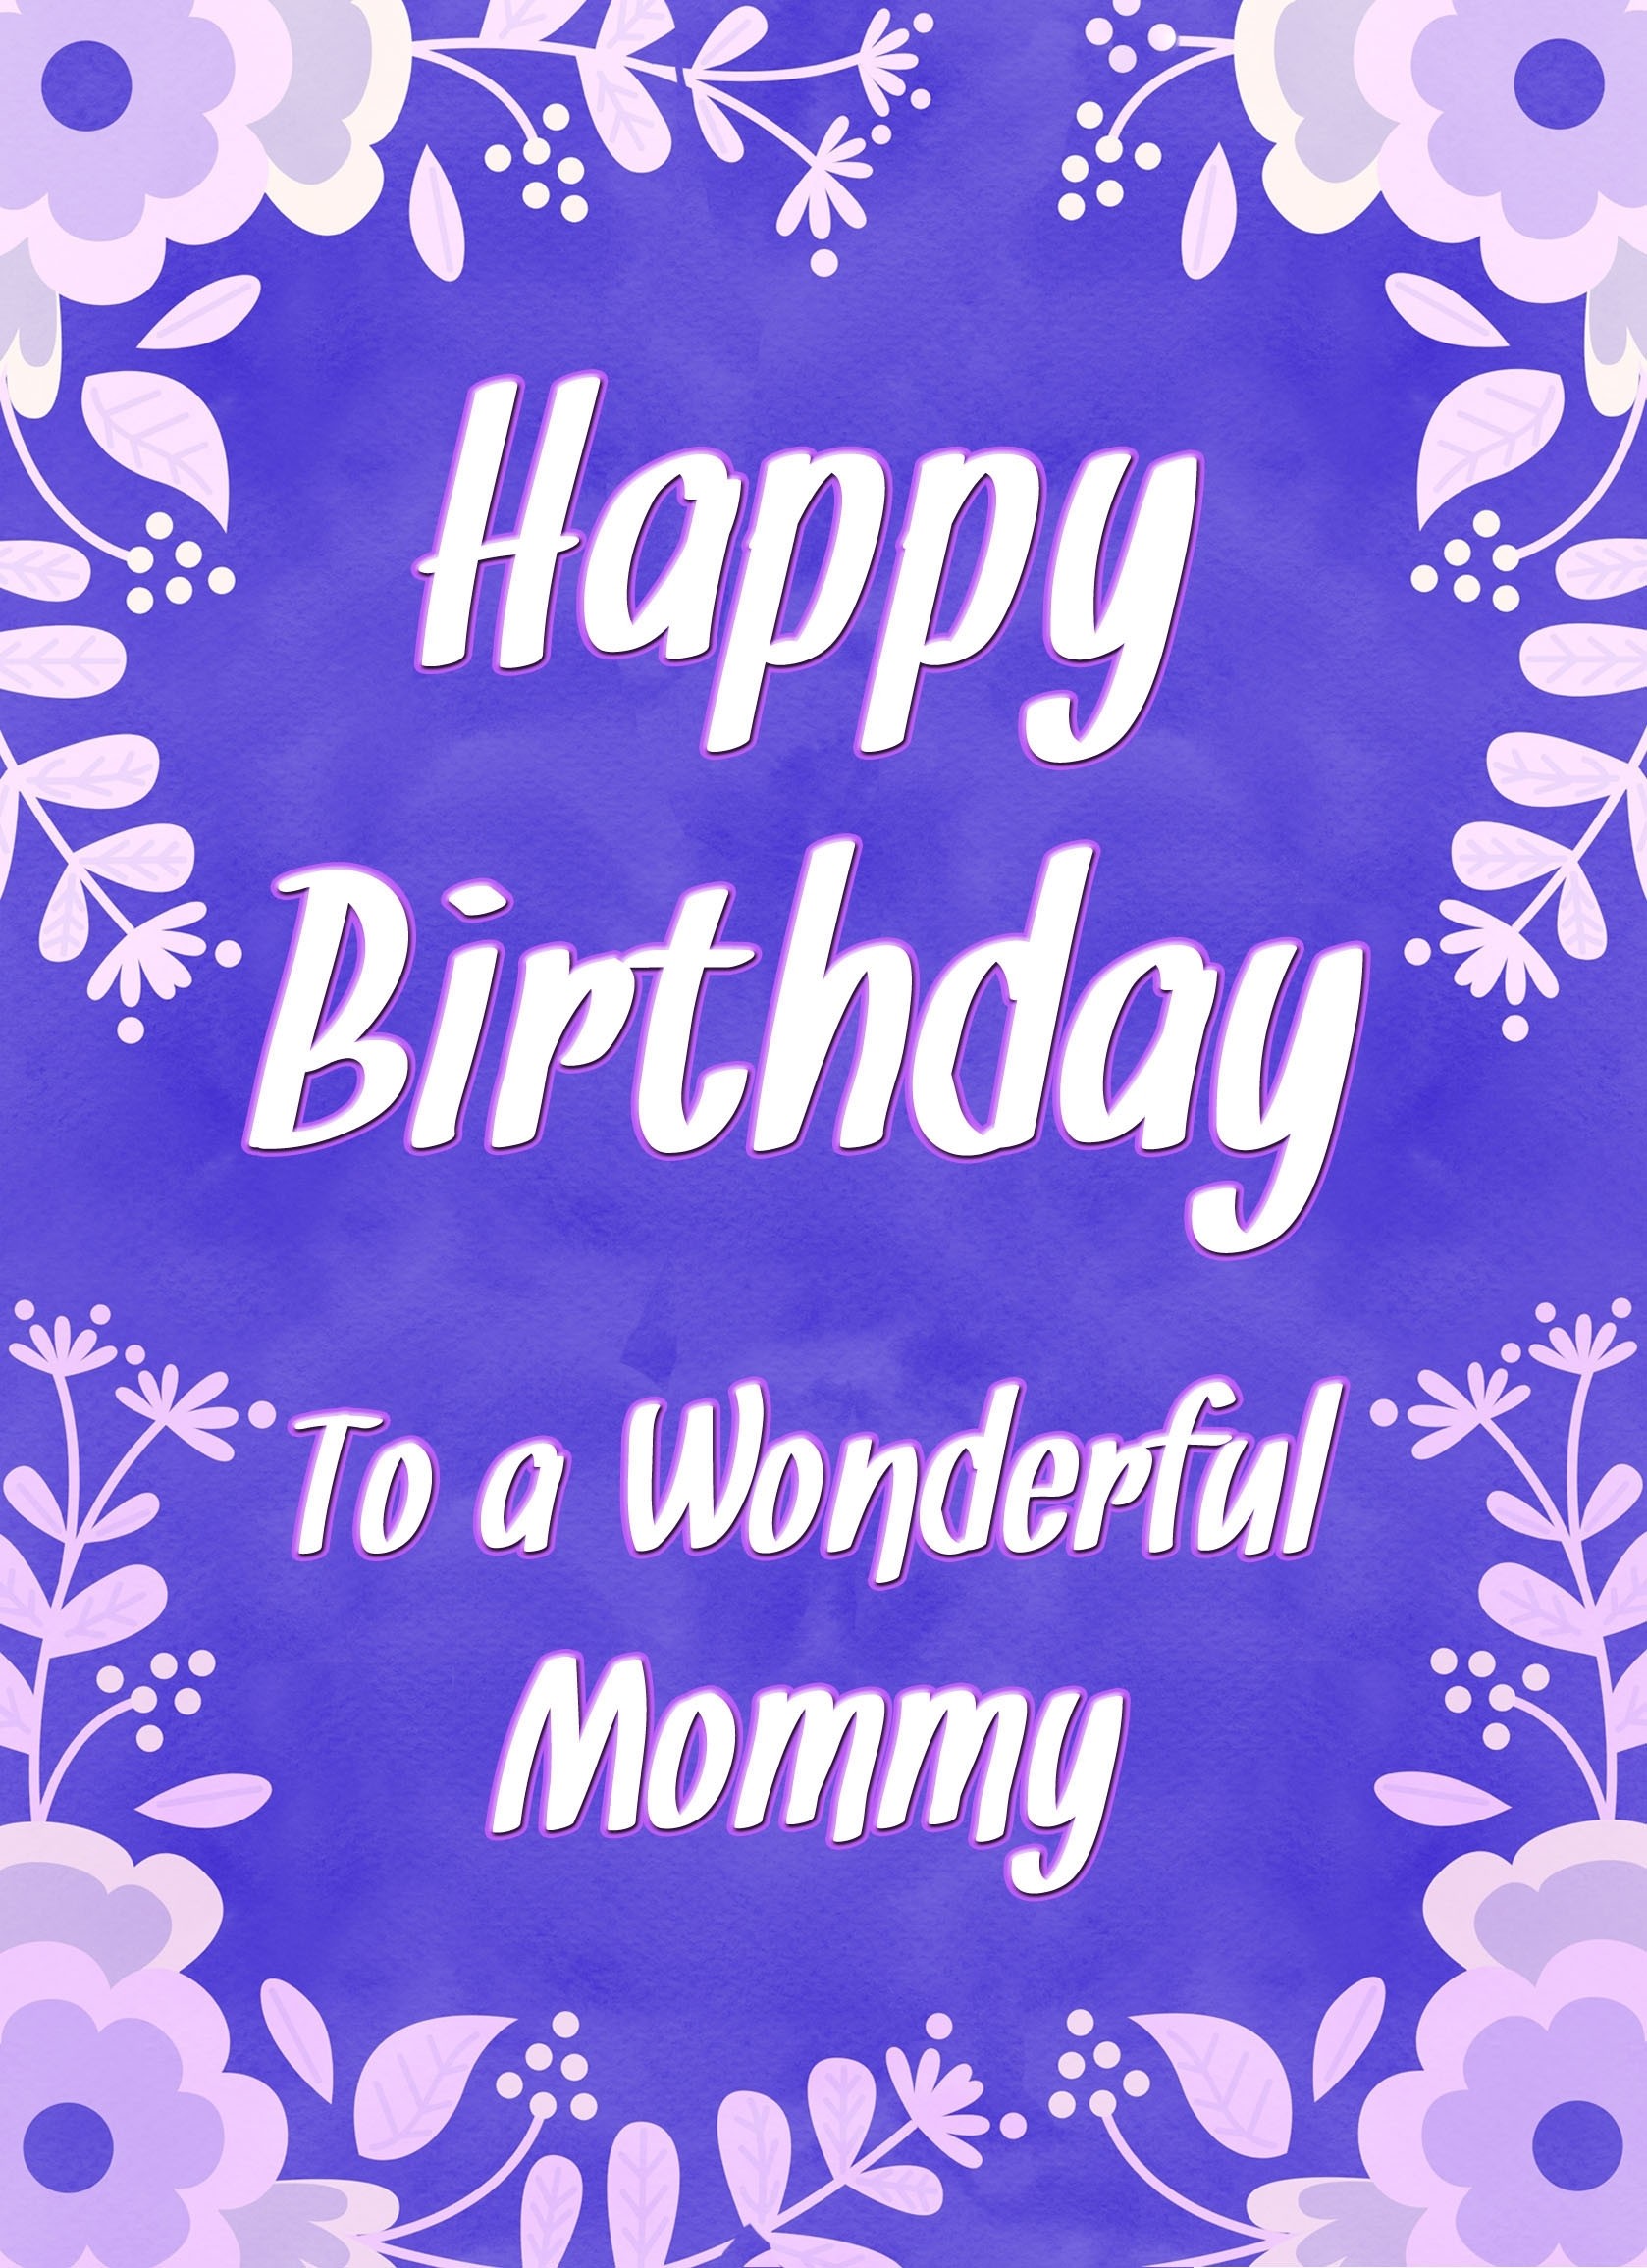 Birthday Card For Wonderful Mommy (Purple Border)